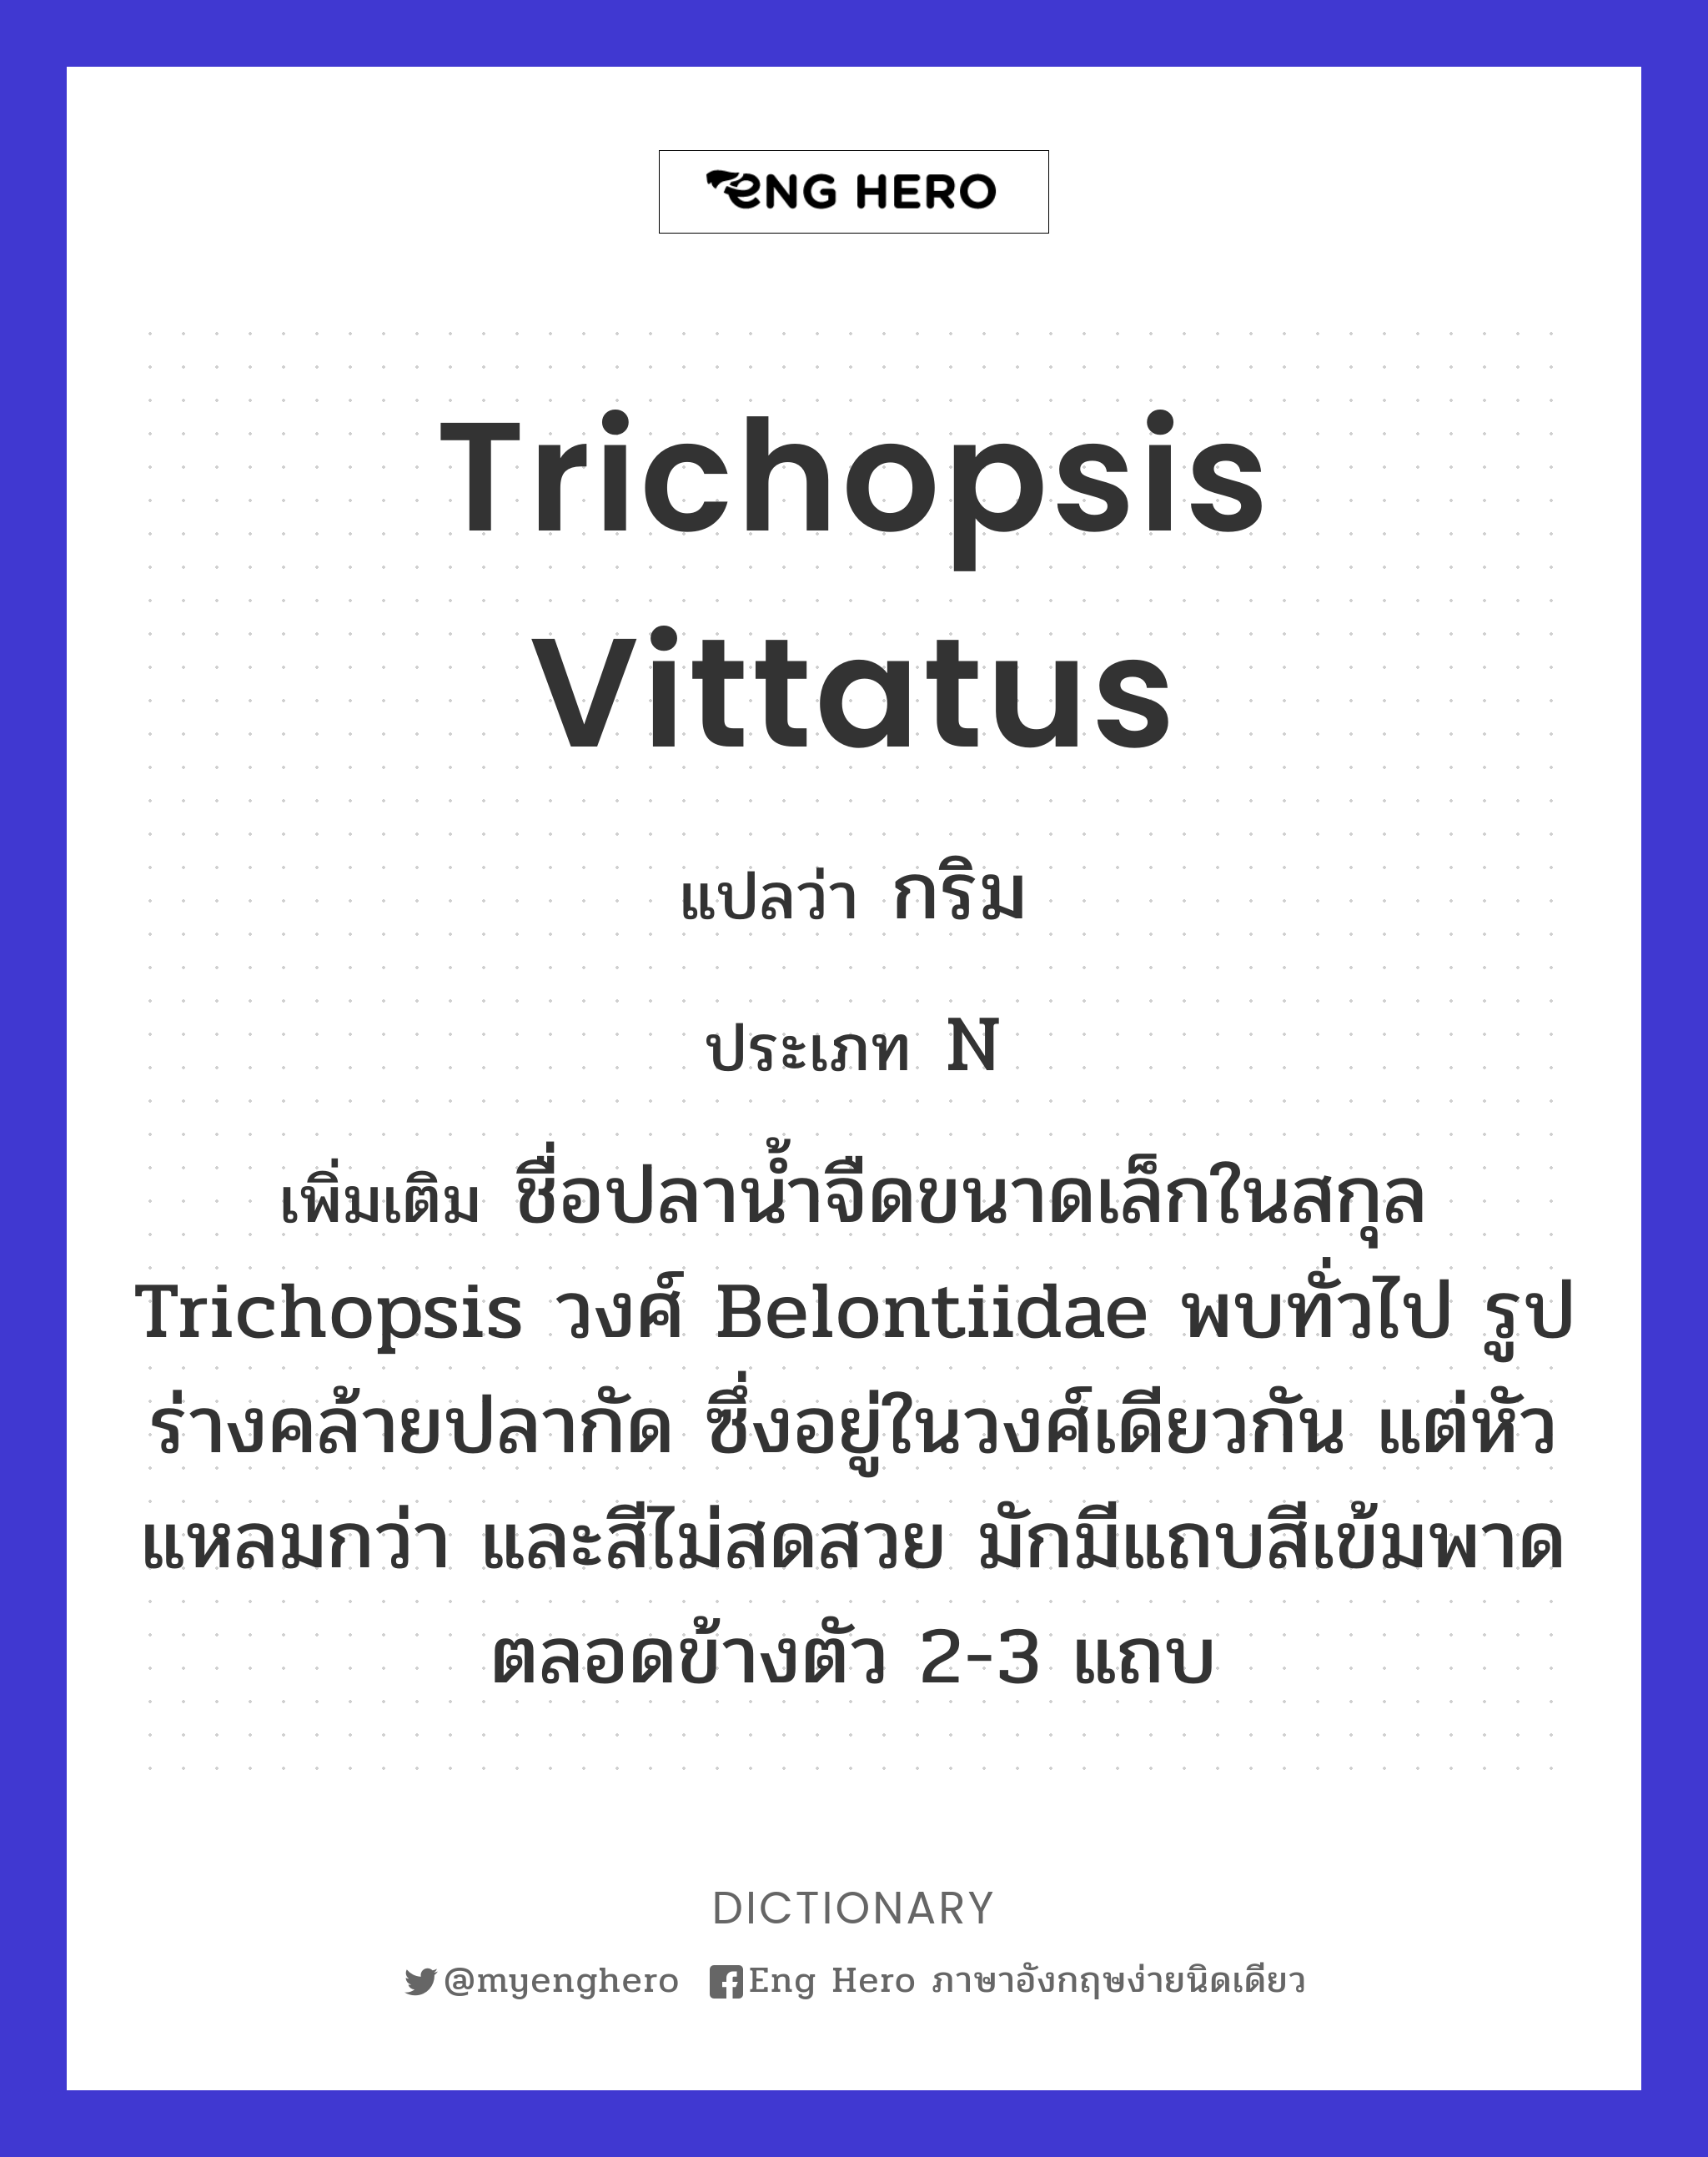 Trichopsis vittatus